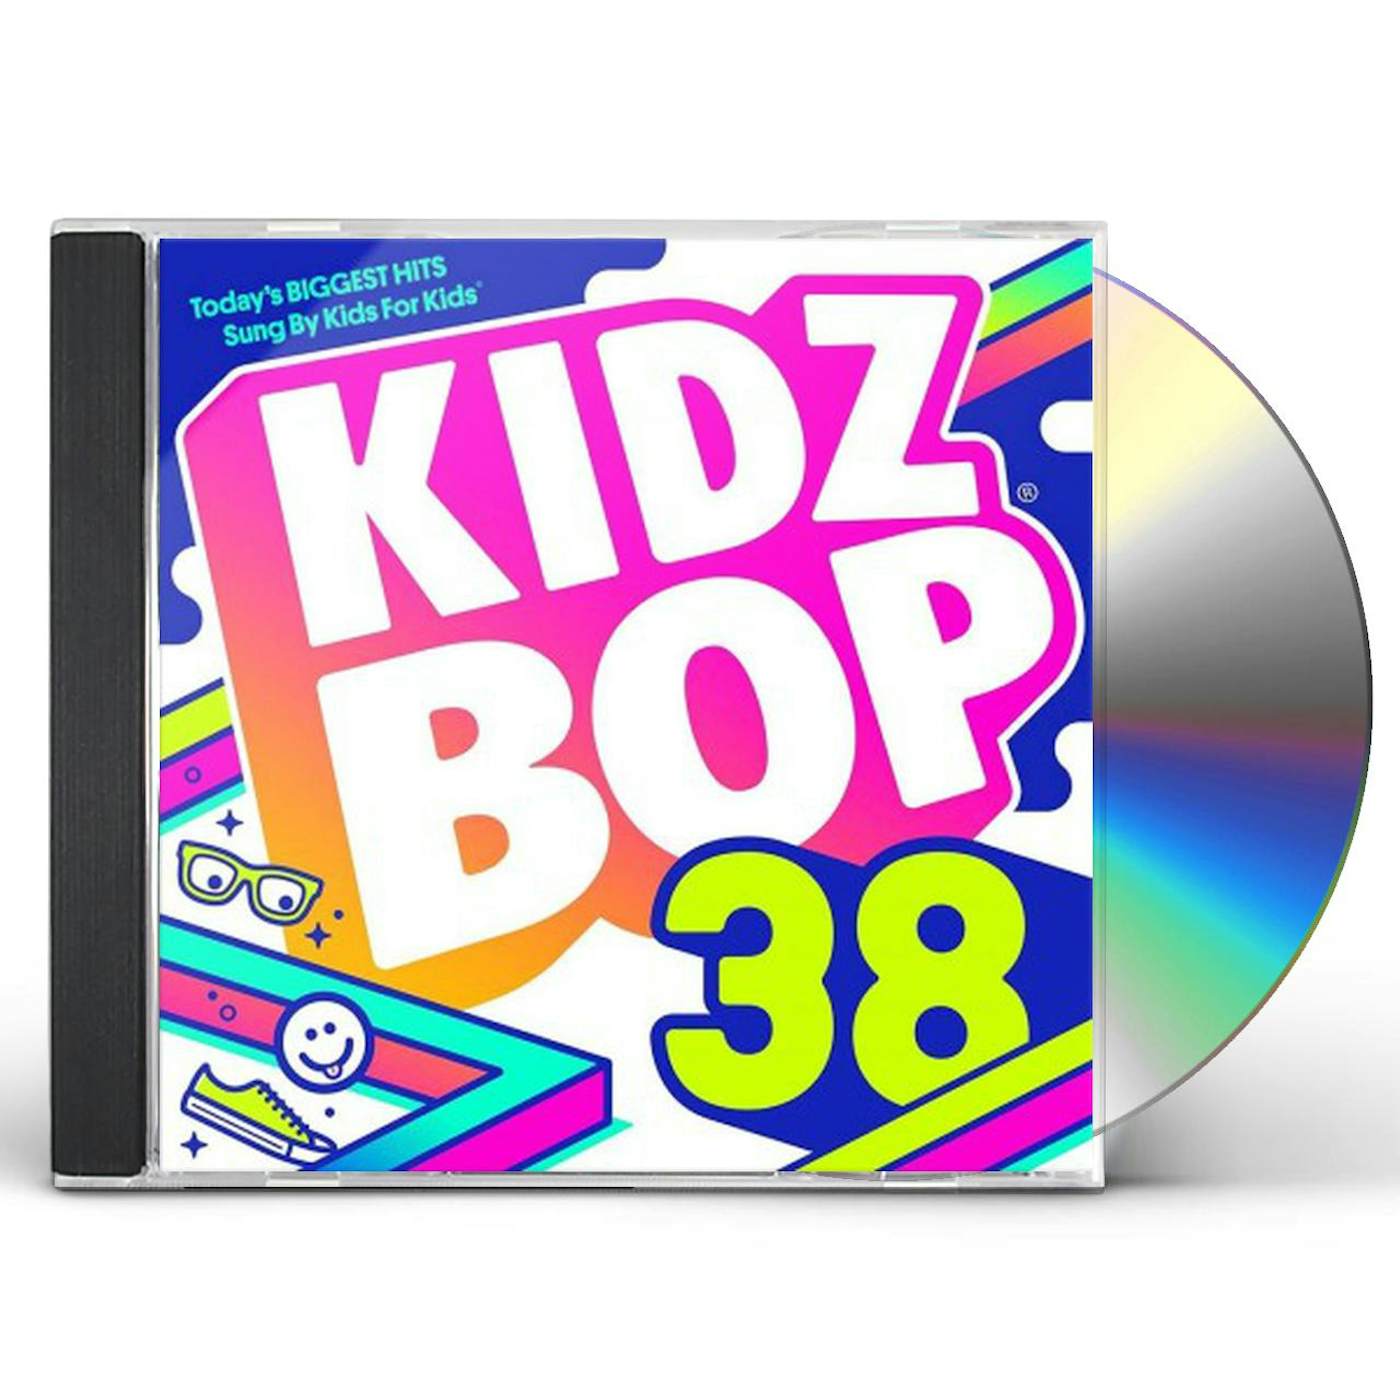 KIDZ BOP 38 CD